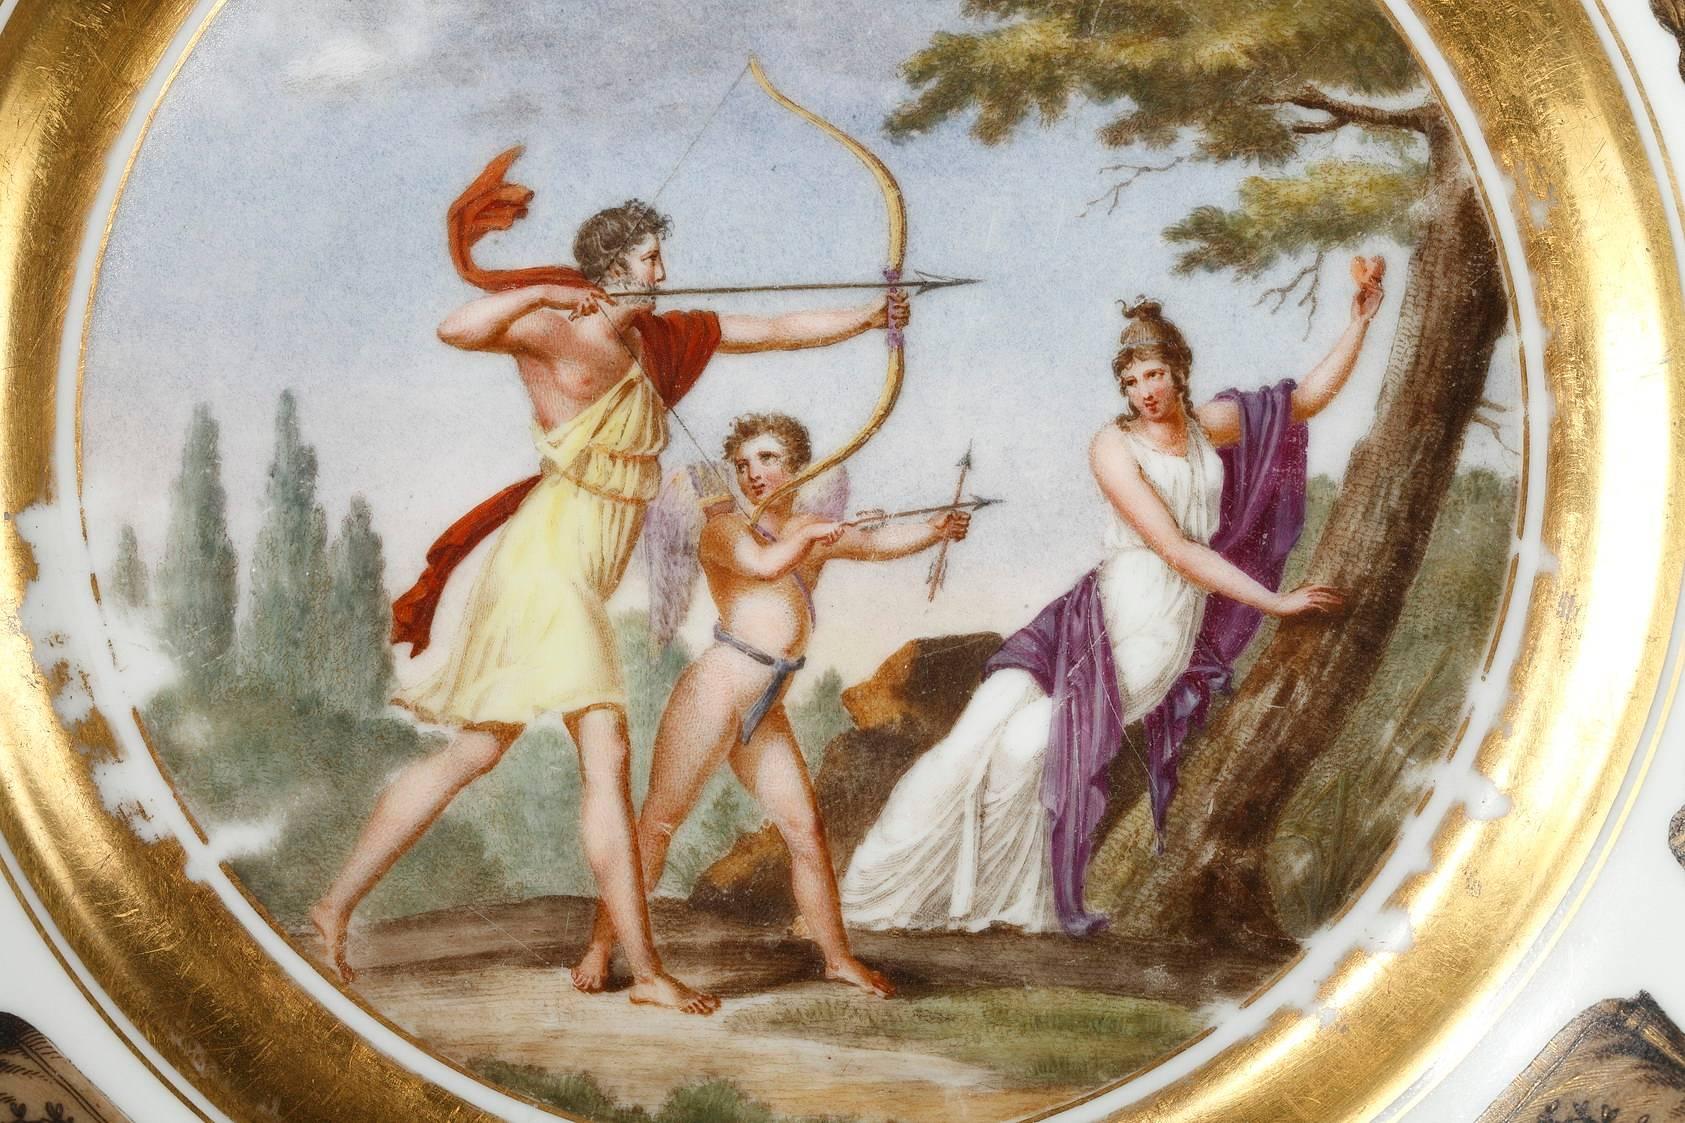 Steingutteller aus der Manufaktur in Creil, dekoriert mit einer mythologischen Szene in einer Landschaft. In dieser Szene sind ein junger Mann und Amor gemeinsam auf der Jagd, begleitet von einer Nymphe, die ein Herz in der Hand hält. Der junge Mann